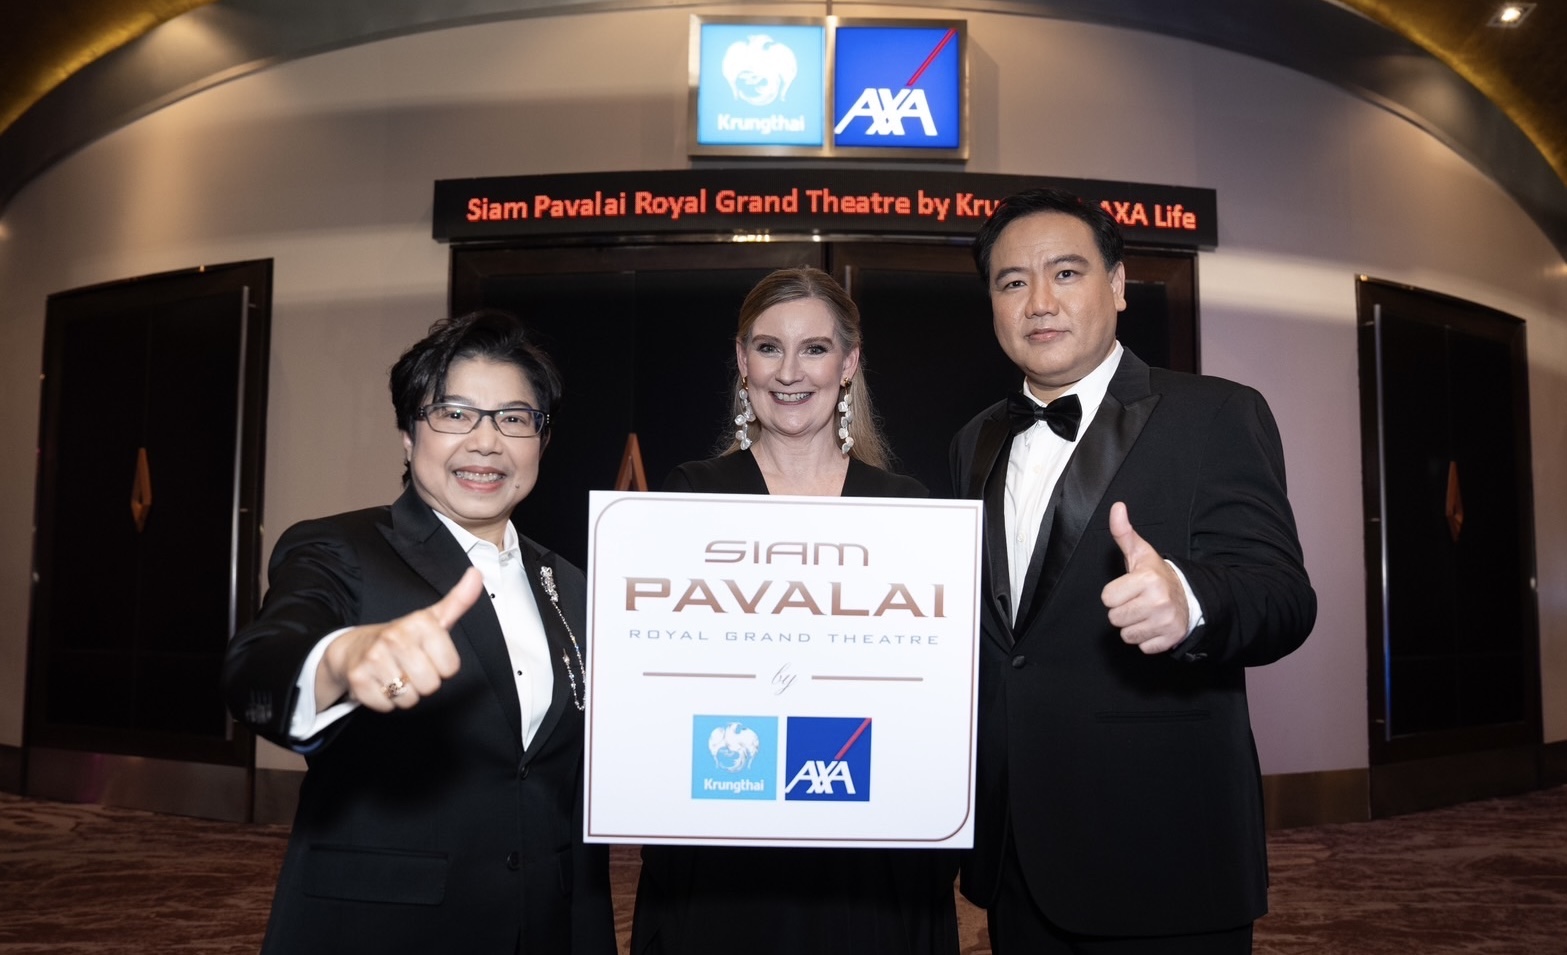 กรุงไทย-แอกซ่า ประกันชีวิต จับมือพันธมิตร เมเจอร์ ซีนีเพล็กซ์ กรุ้ปชวนสัมผัสความหรูหราระดับเวิลด์คลาสผ่านโรงภาพยนตร์“Siam Pavalai Royal Grand Theatre by Krungthai-AXA Life”